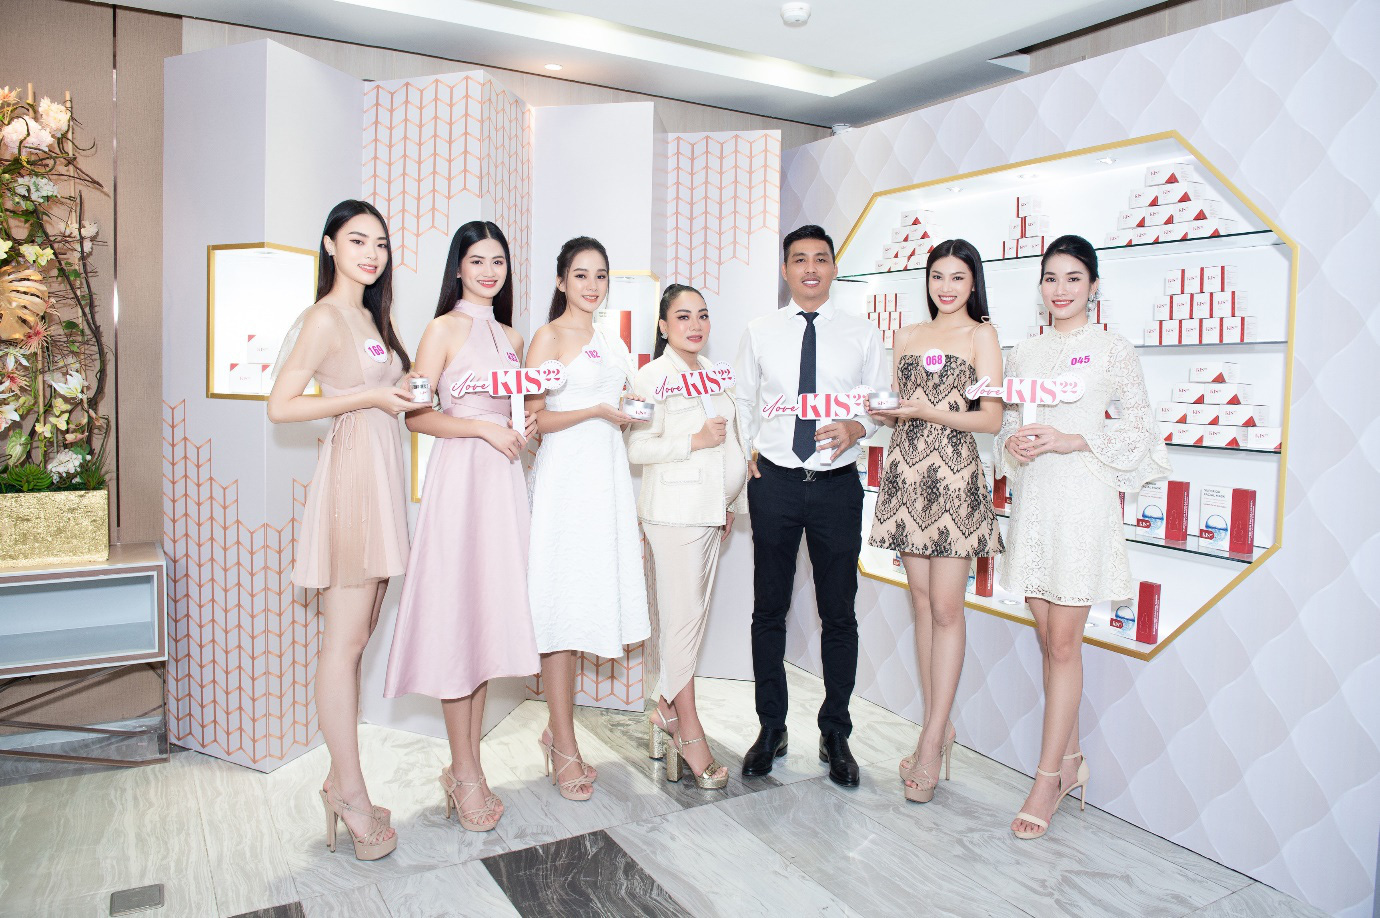 CEO KIS 22 “truyền lửa” cho thí sinh Hoa hậu Việt Nam 2020 trước thềm Chung kết toàn quốc - Ảnh 5.